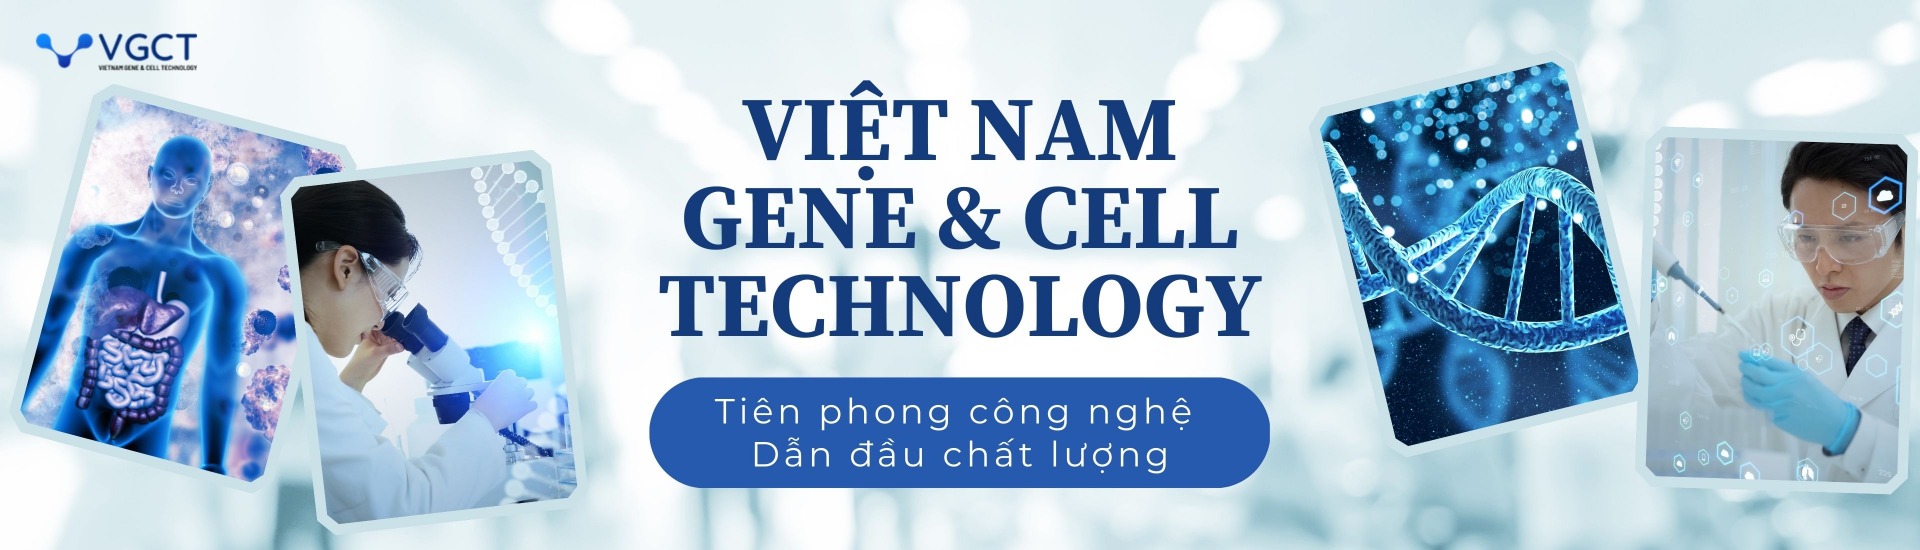 Công ty Cổ phần Việt Nam Gene Cell Technology - VGCT.COM.VN